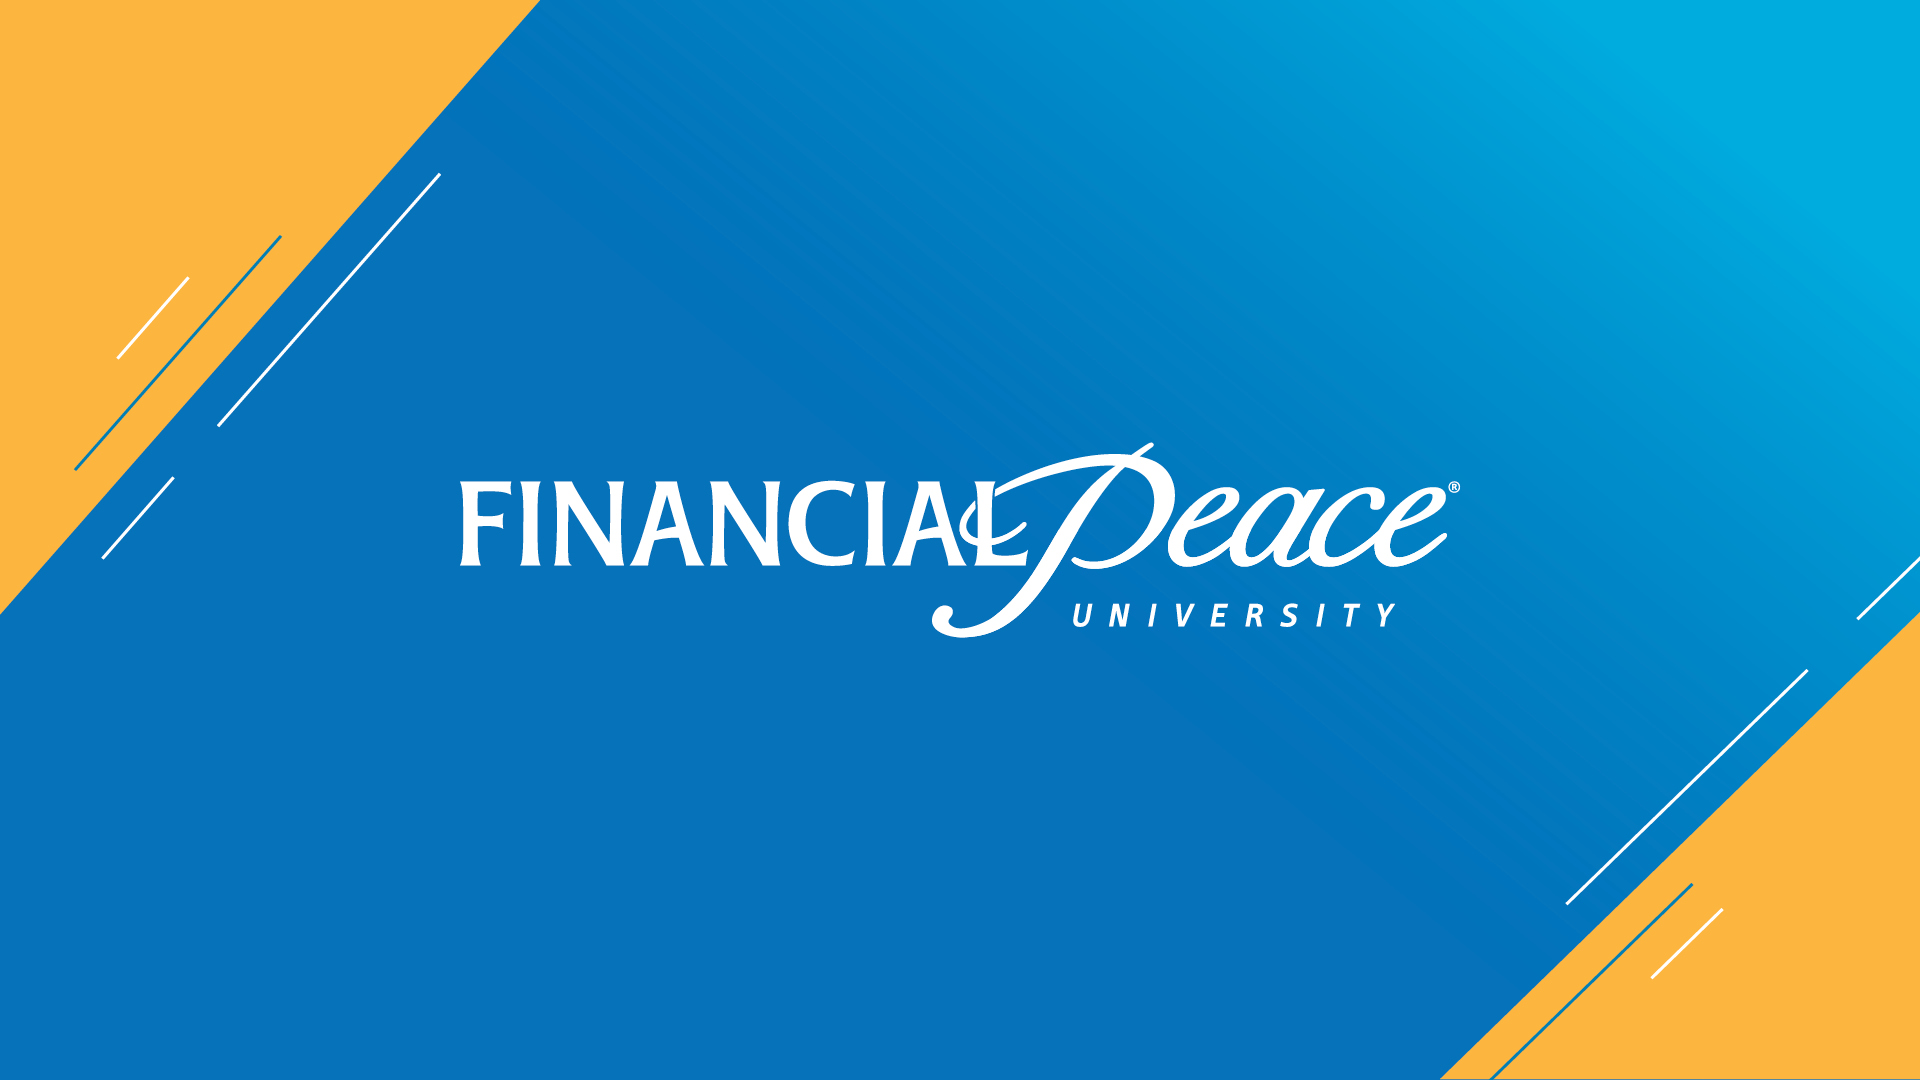 Financial Peace University
9 week class beginning February 26
Sundays | 8:50–10:20 a.m. | Oak Brook
Mondays | 7:00–9:00 p.m. | Oak Brook
 
